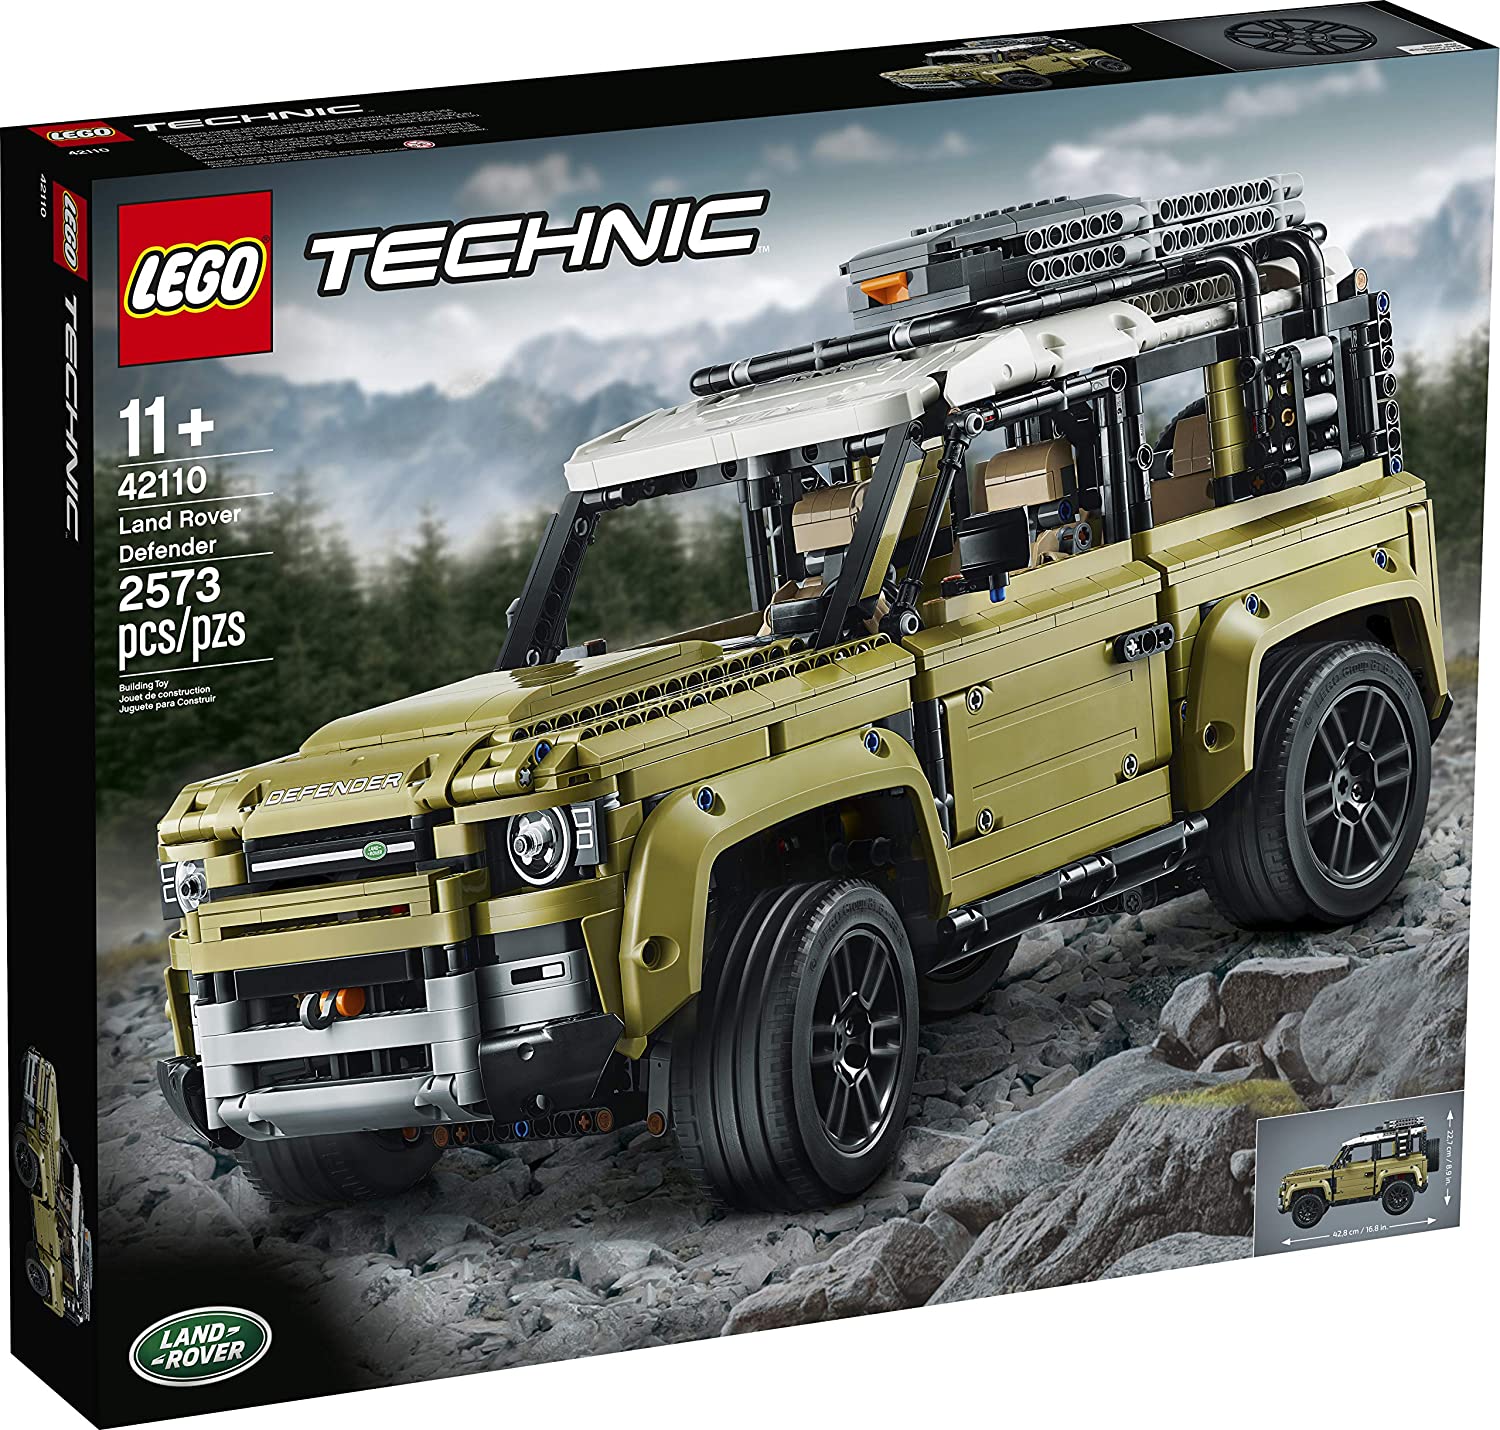 Đồ chơi LEGO TECHNIC - Xe Vượt Địa Hình Land Rover - Mã SP 42110